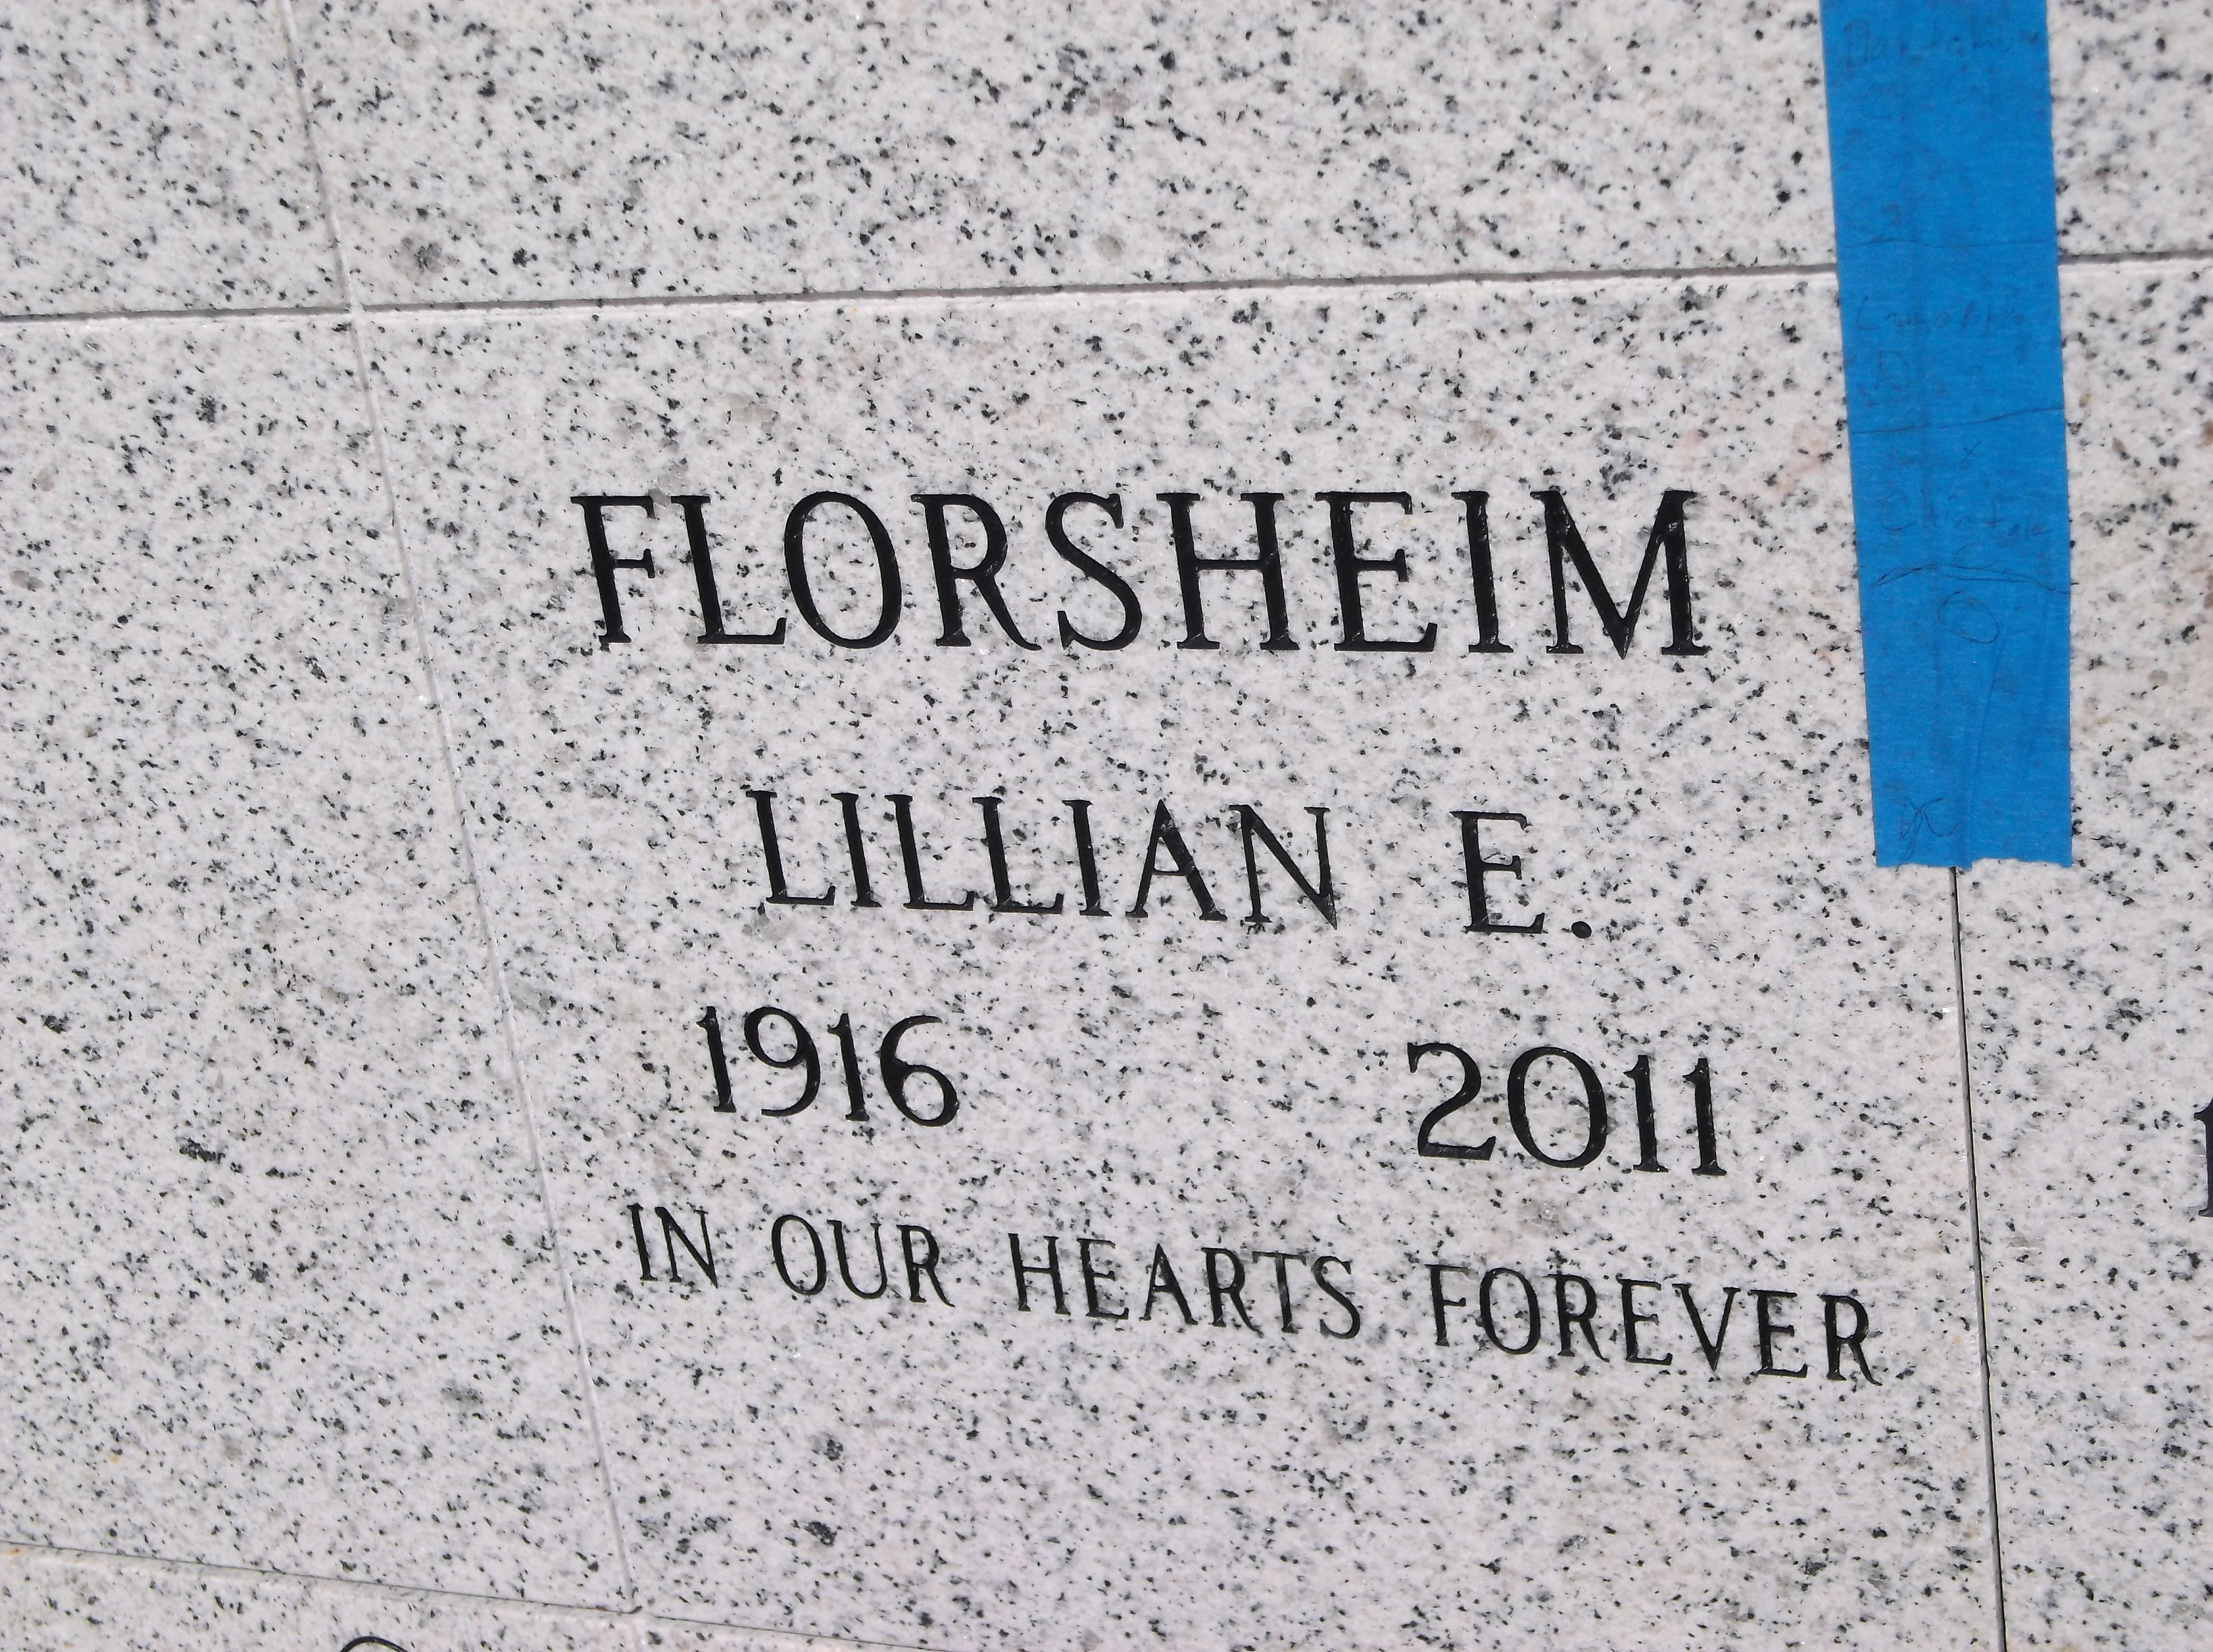 Lillian E Florsheim